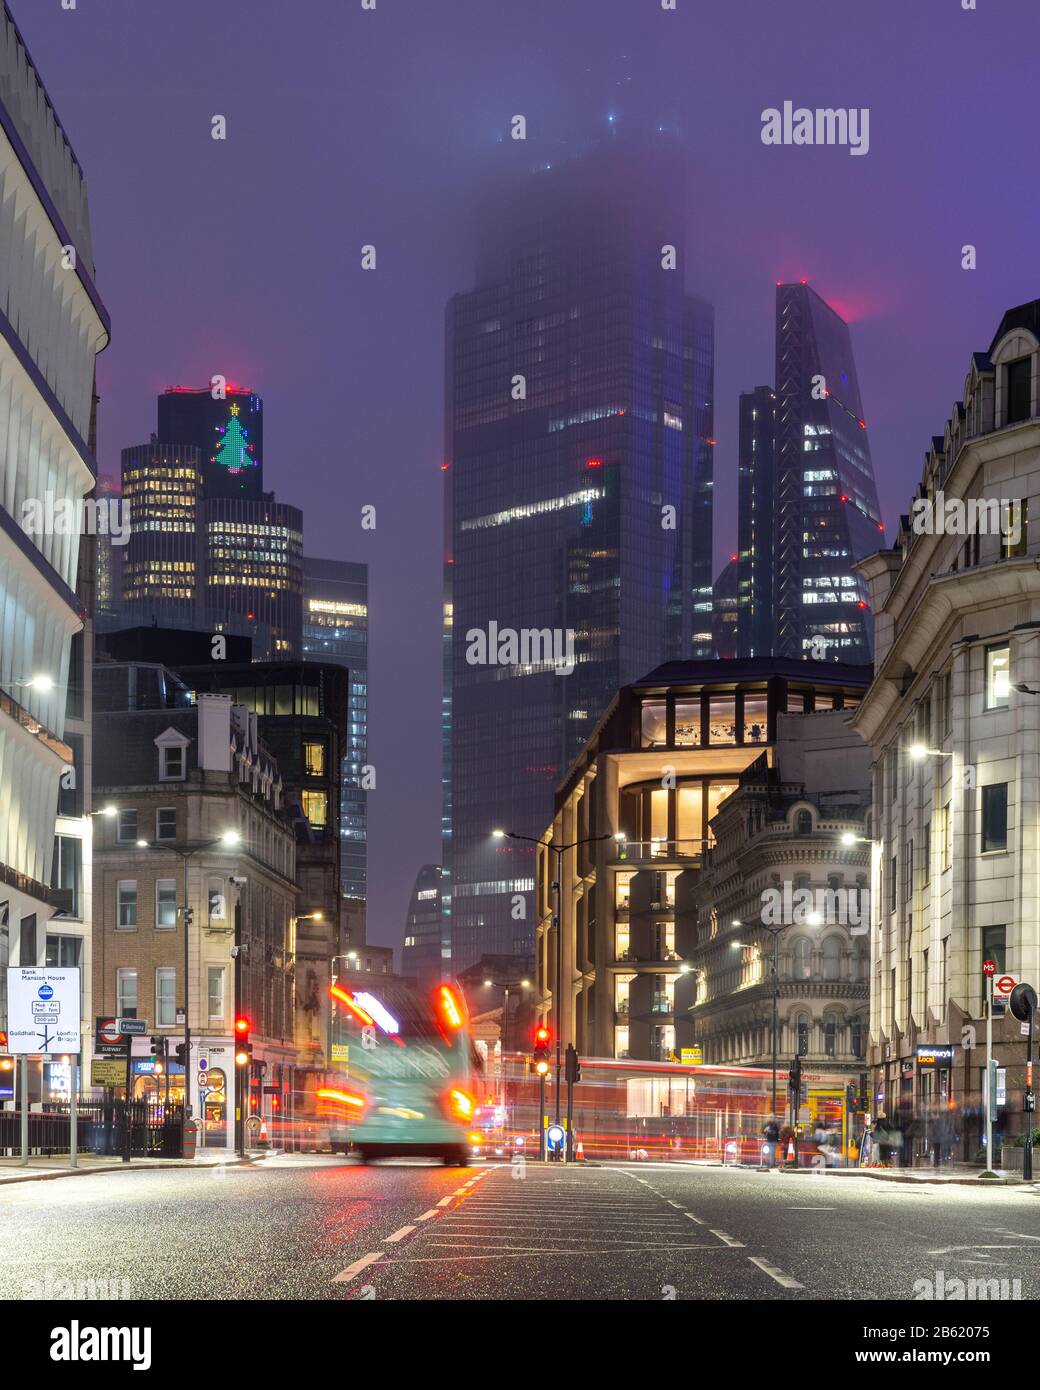 Londra, Inghilterra, Regno Unito - 31 dicembre 2019: Il traffico scorre lungo la Queen Victoria Street passando davanti agli uffici del quartiere finanziario della City of London. Foto Stock